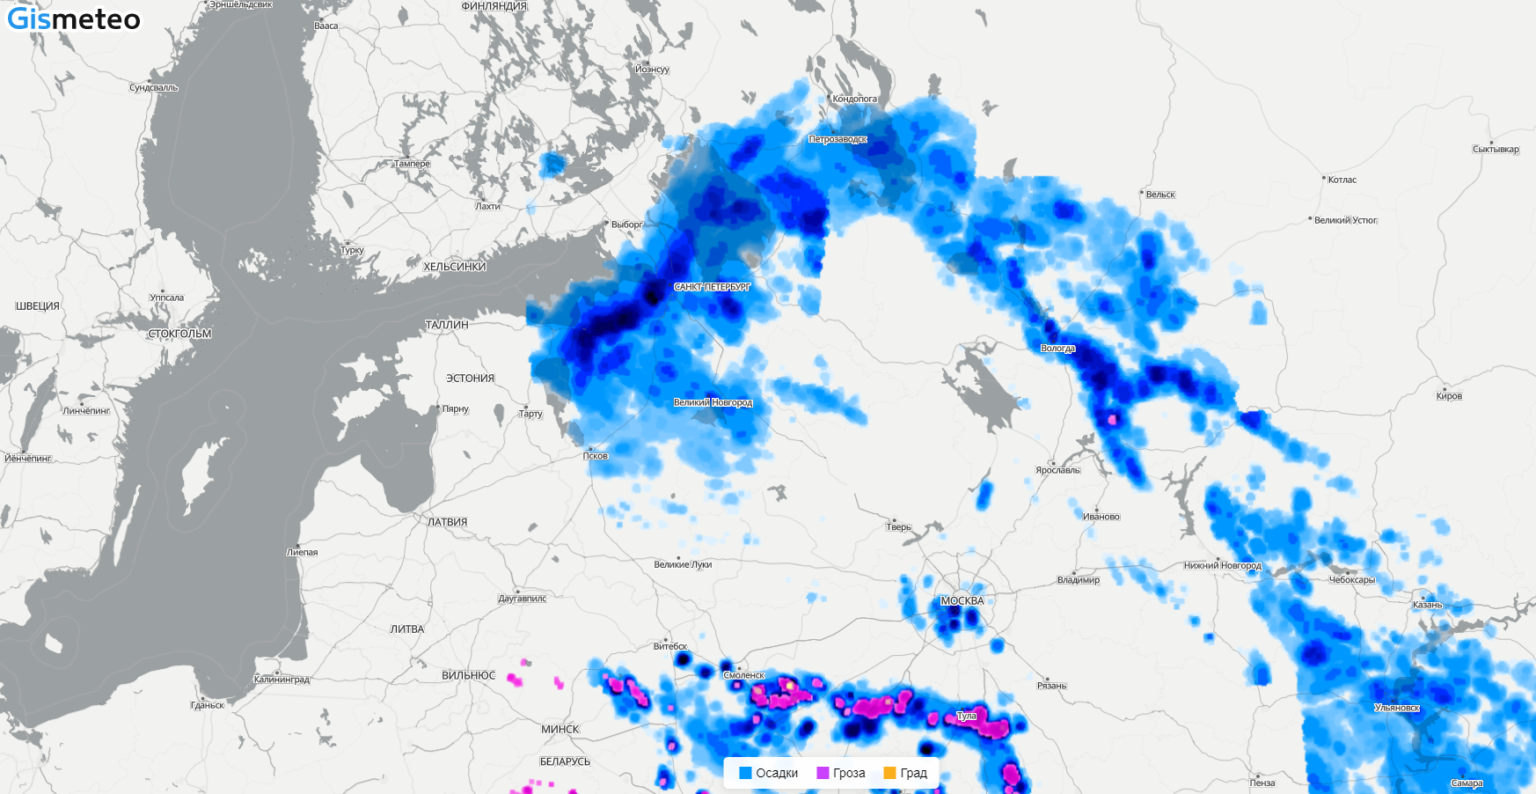 Дождь на карте в реальном времени москва